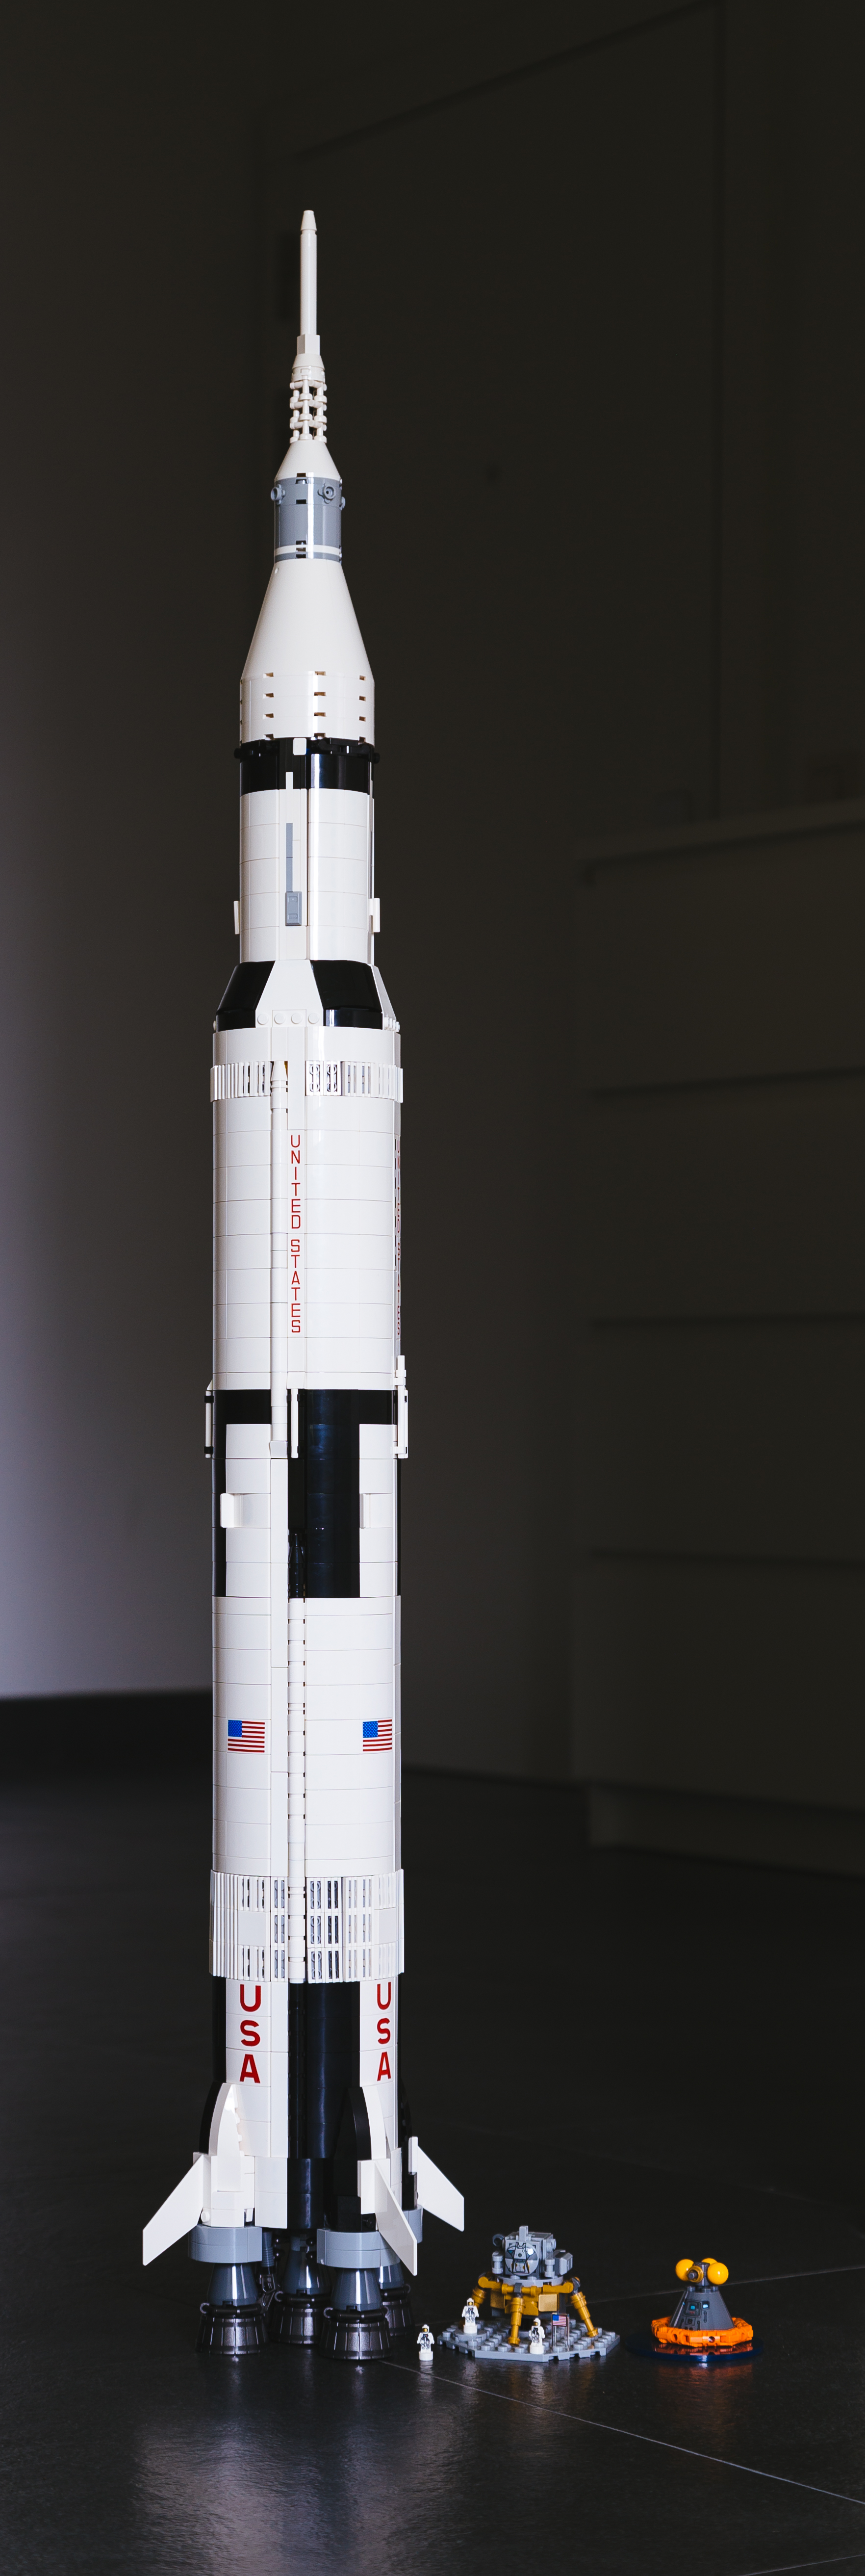 20170611_LEGO_SaturnV-4